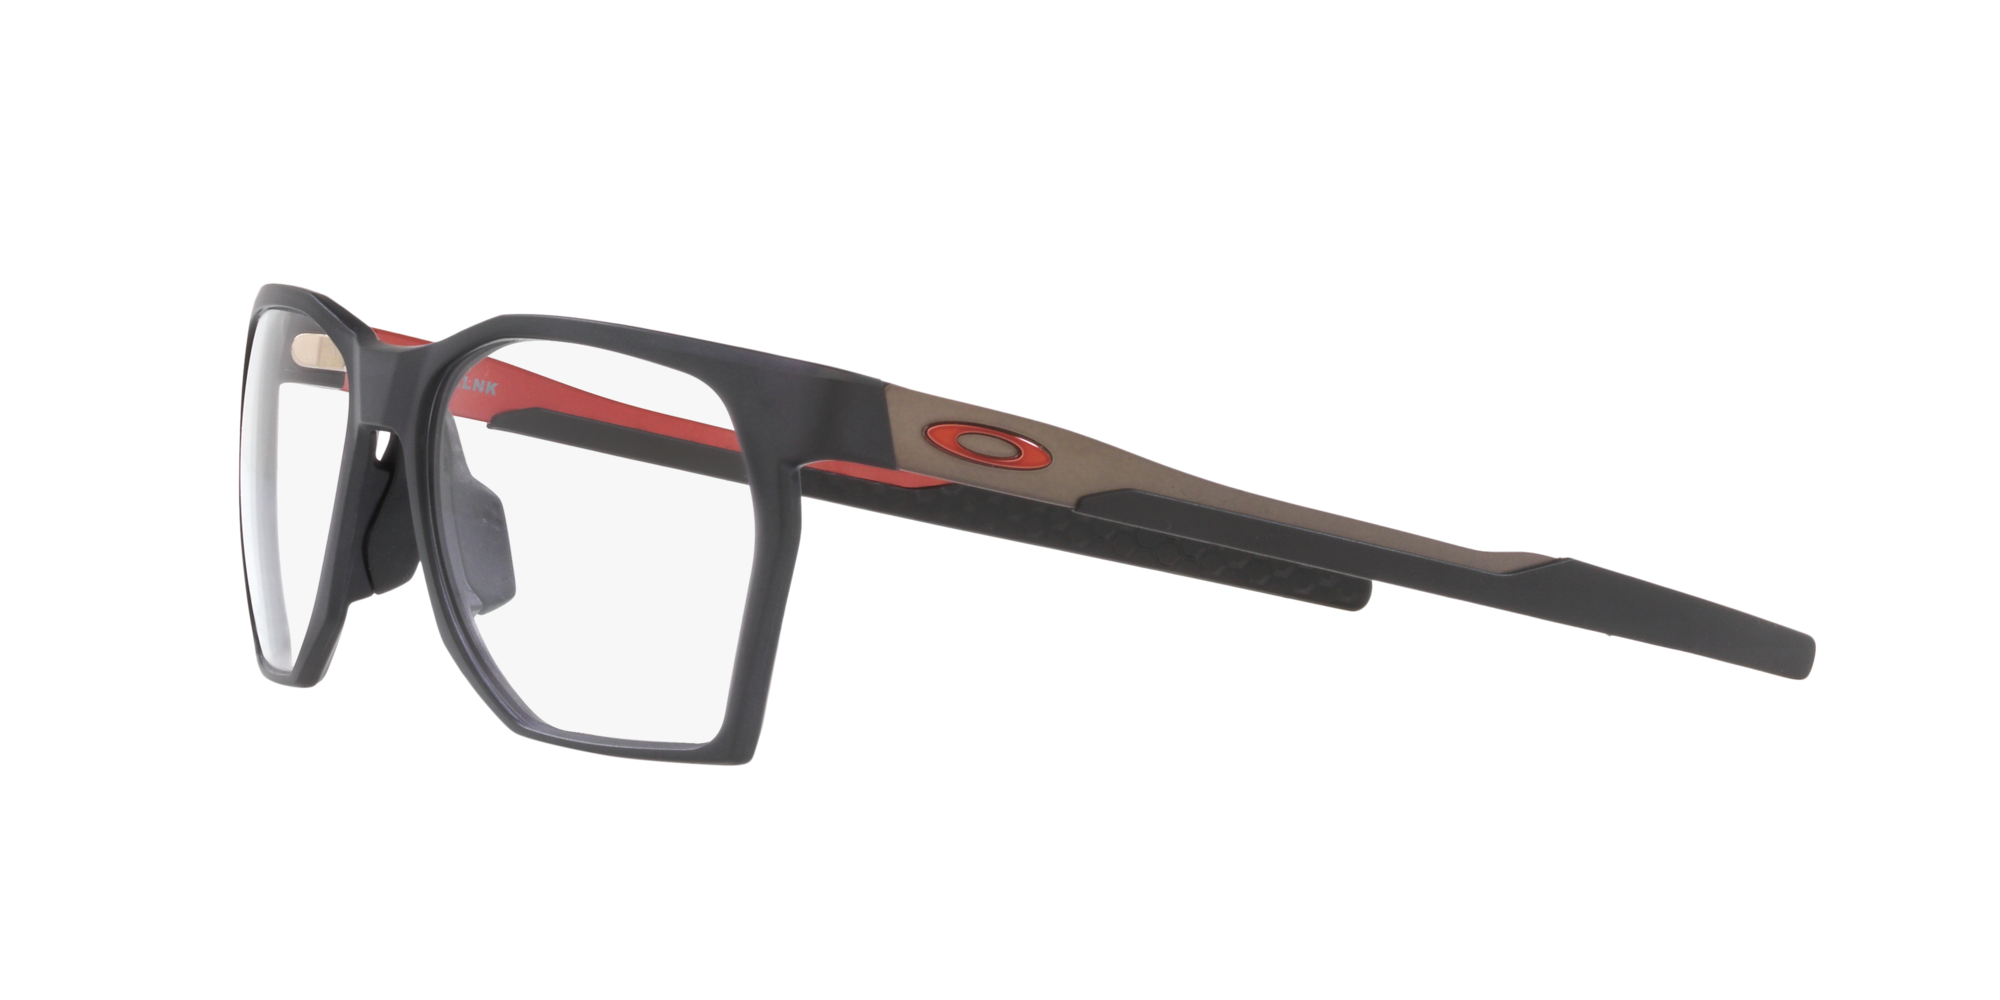 Das Bild zeigt die Korrektionsbrille OX8059 805902  von der Marke Oakley  in  grau rauch satiniert.